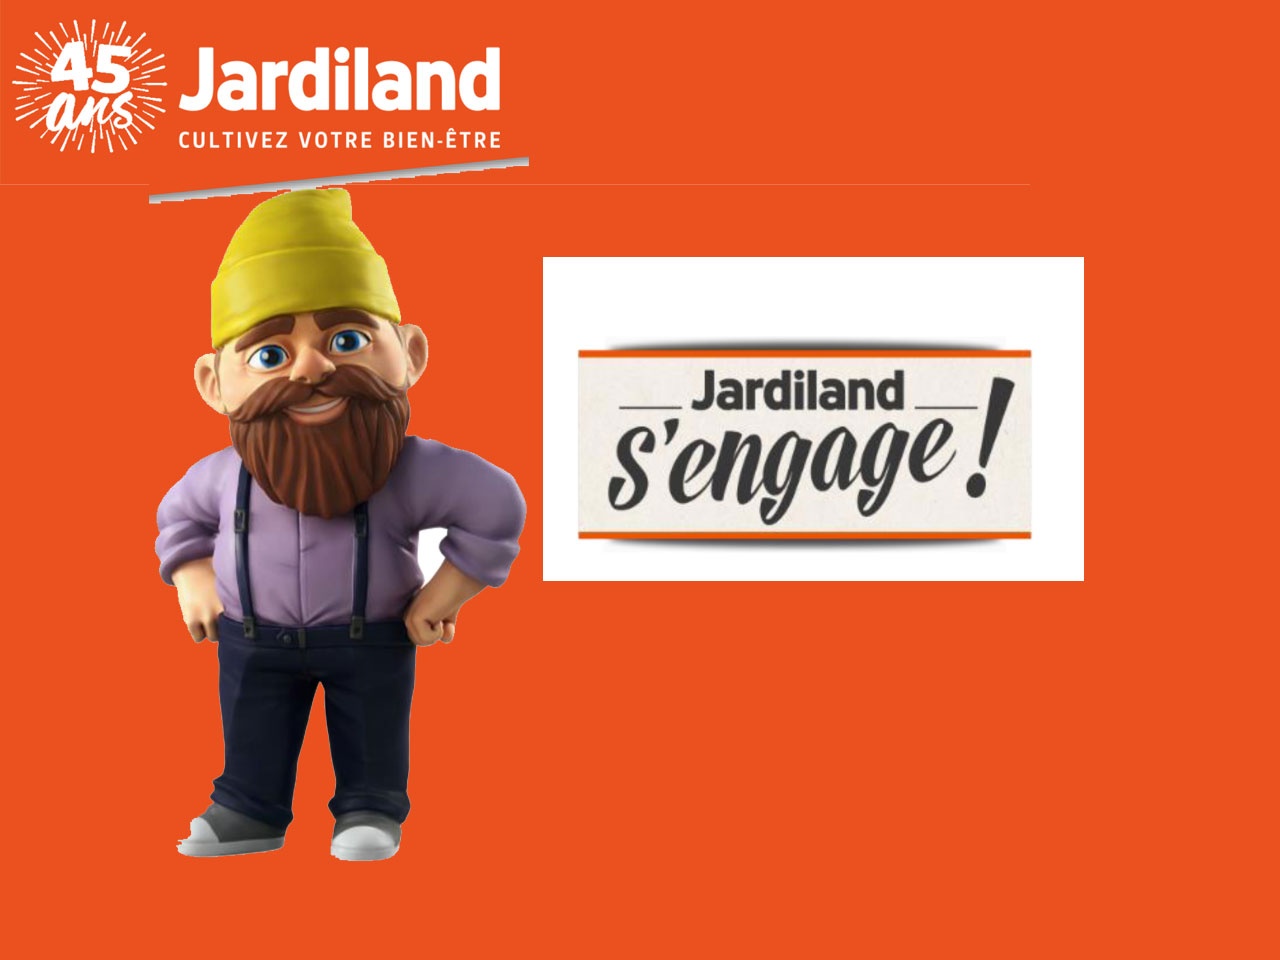 « Jardiland s’engage » dans tout le parcours d’achat, au quotidien et jusque dans la transmission et le partage !